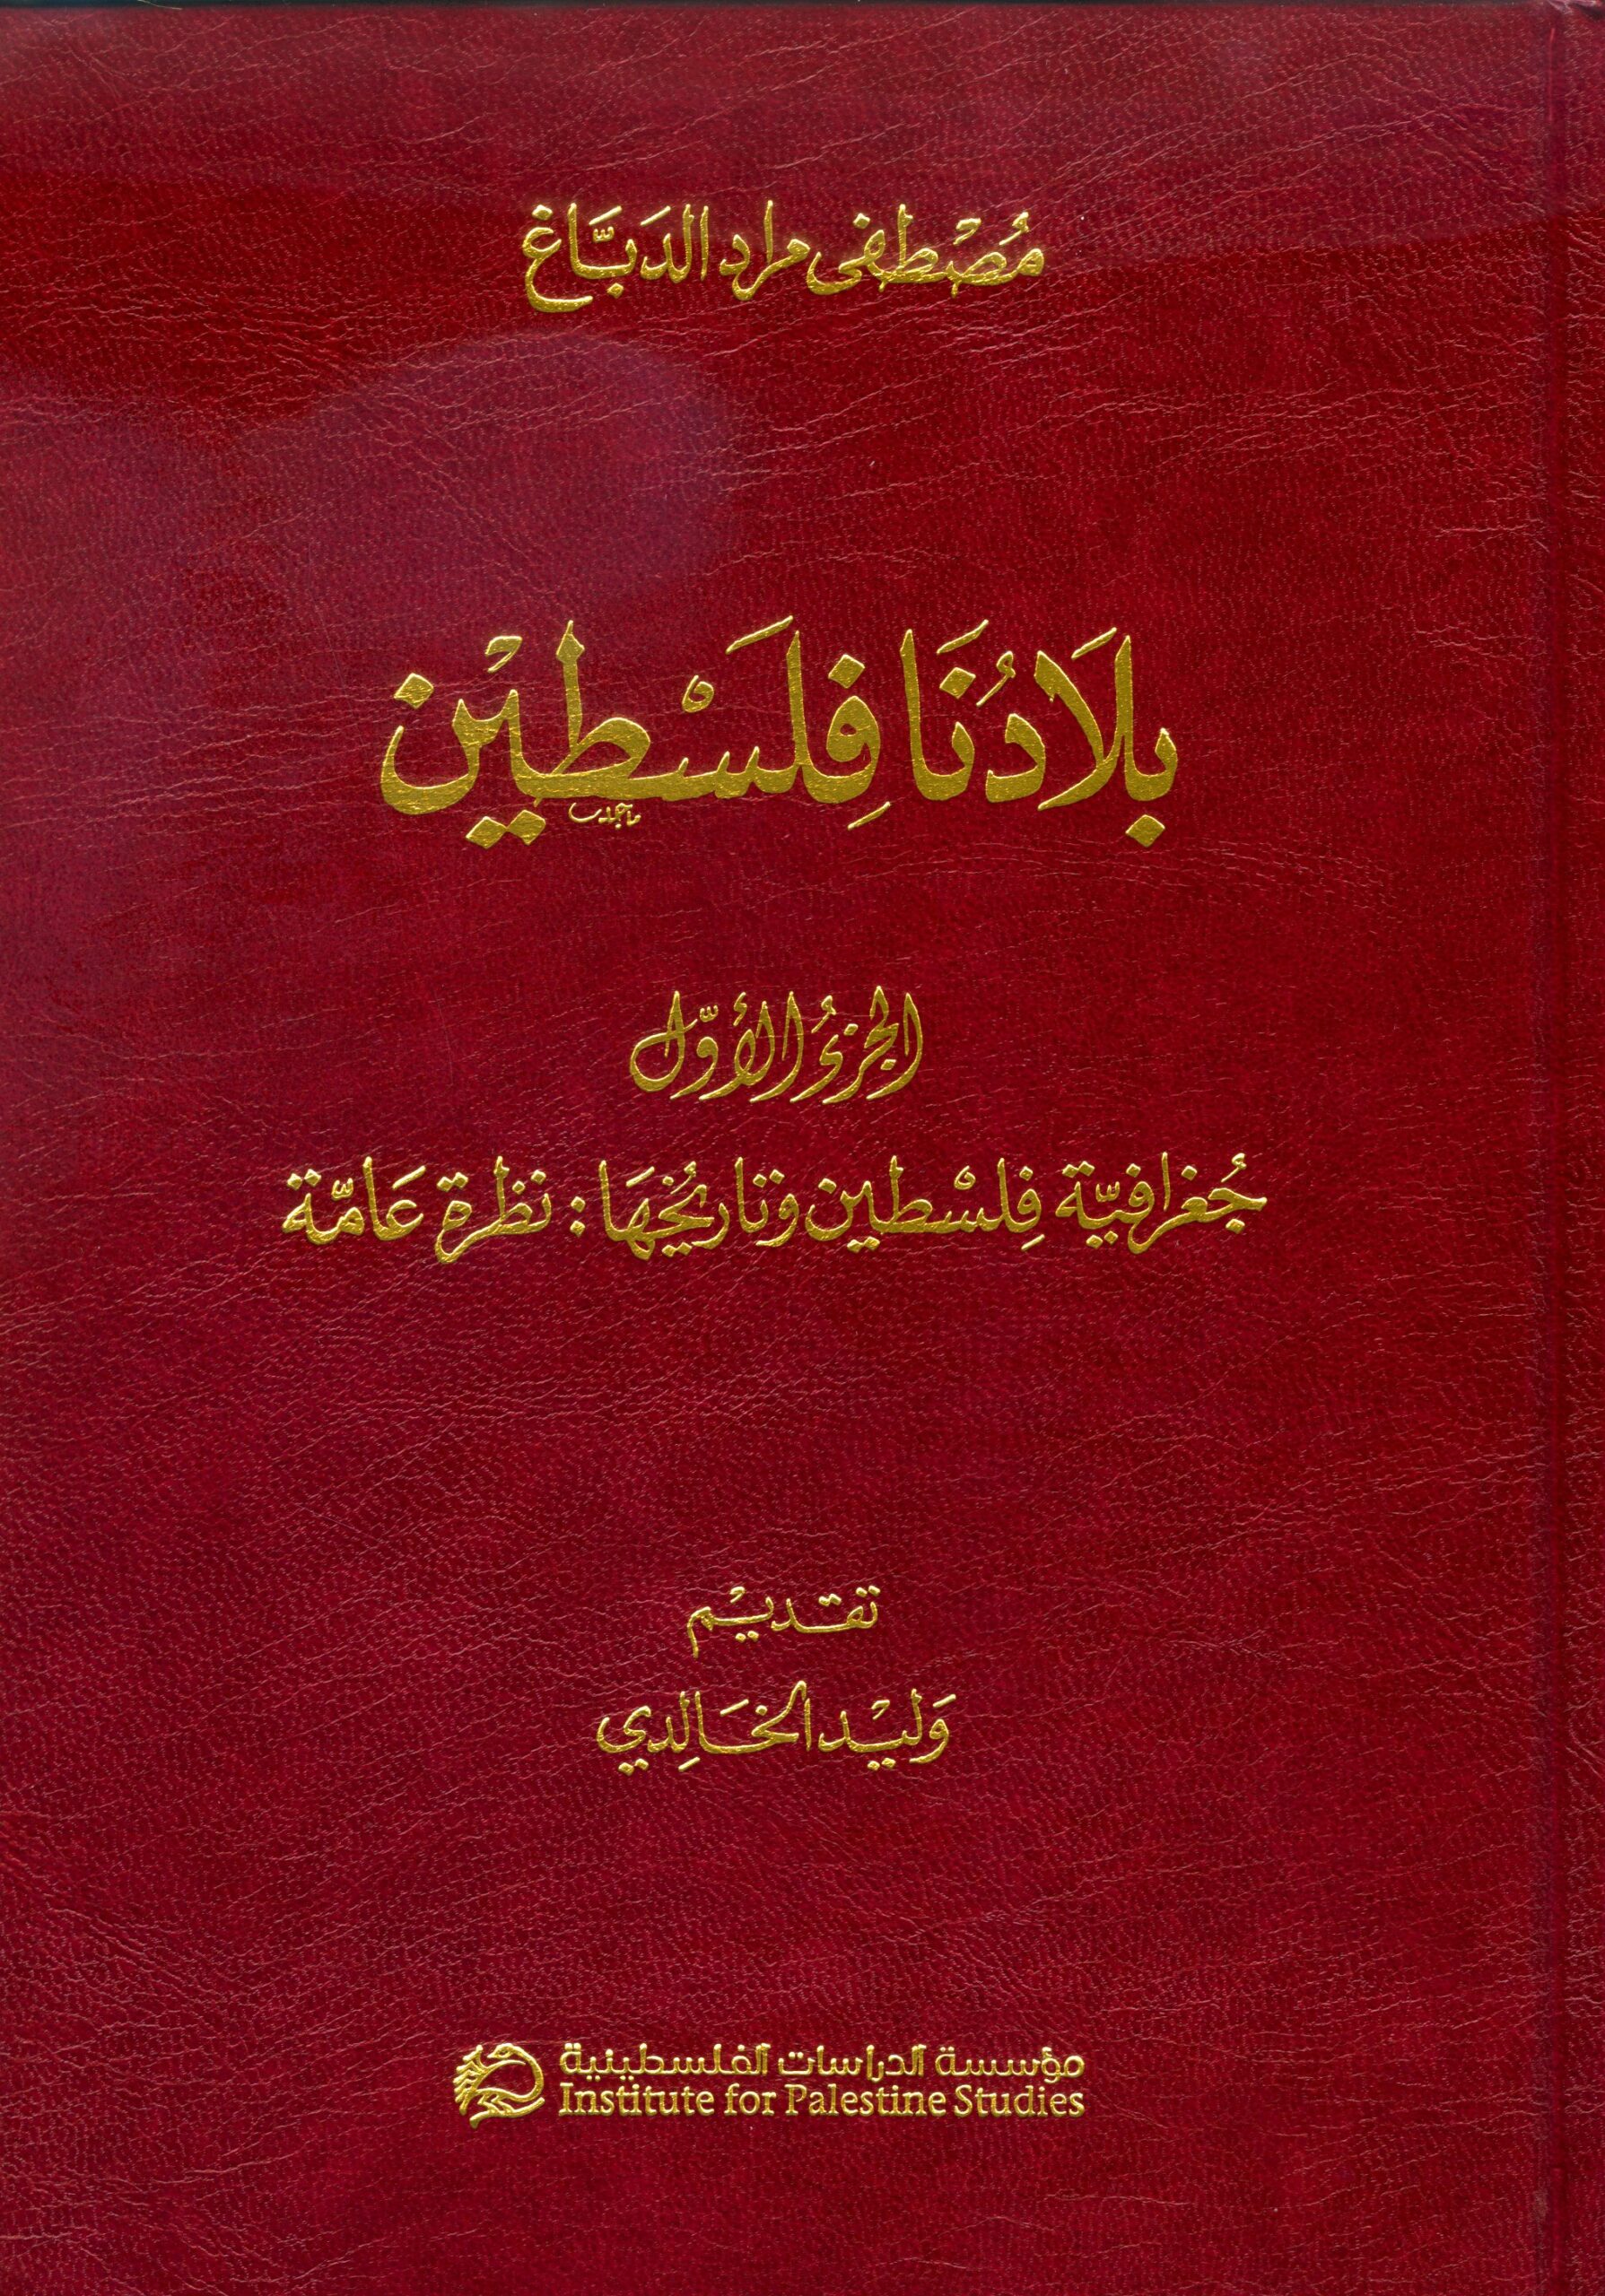 موسوعة بلادنا فلسطين (11 مجلداً)